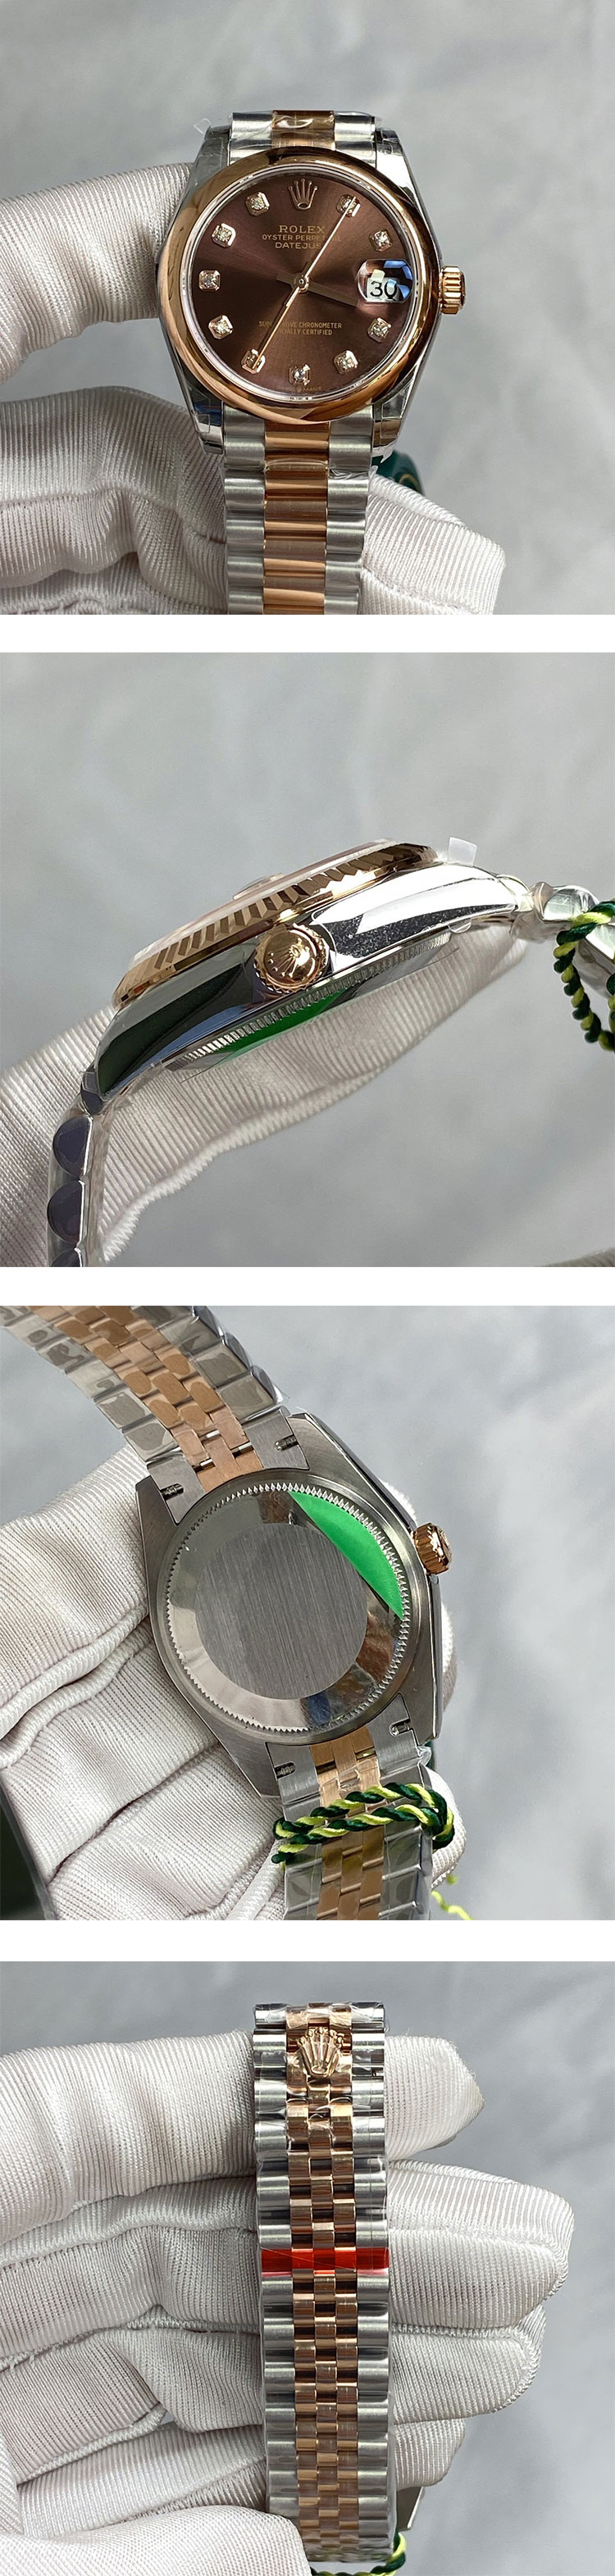 腕時計相談 ロレックスコピーM278241-0027 デイトジャスト 31mm ブラウン文字盤 気分上昇